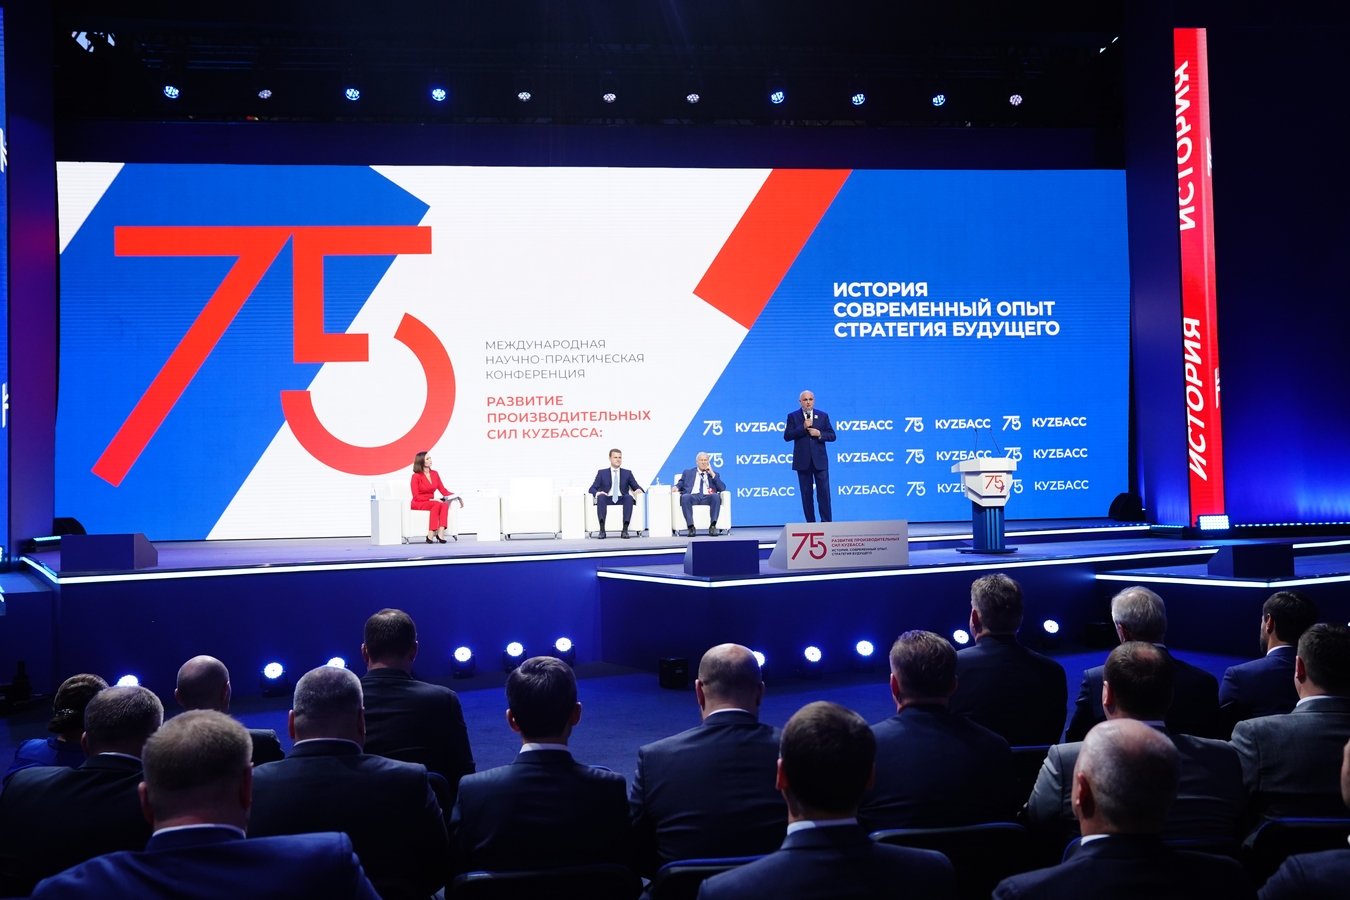 Международная конференция «Развитие производительных сил Кузбасса» официально открыта   